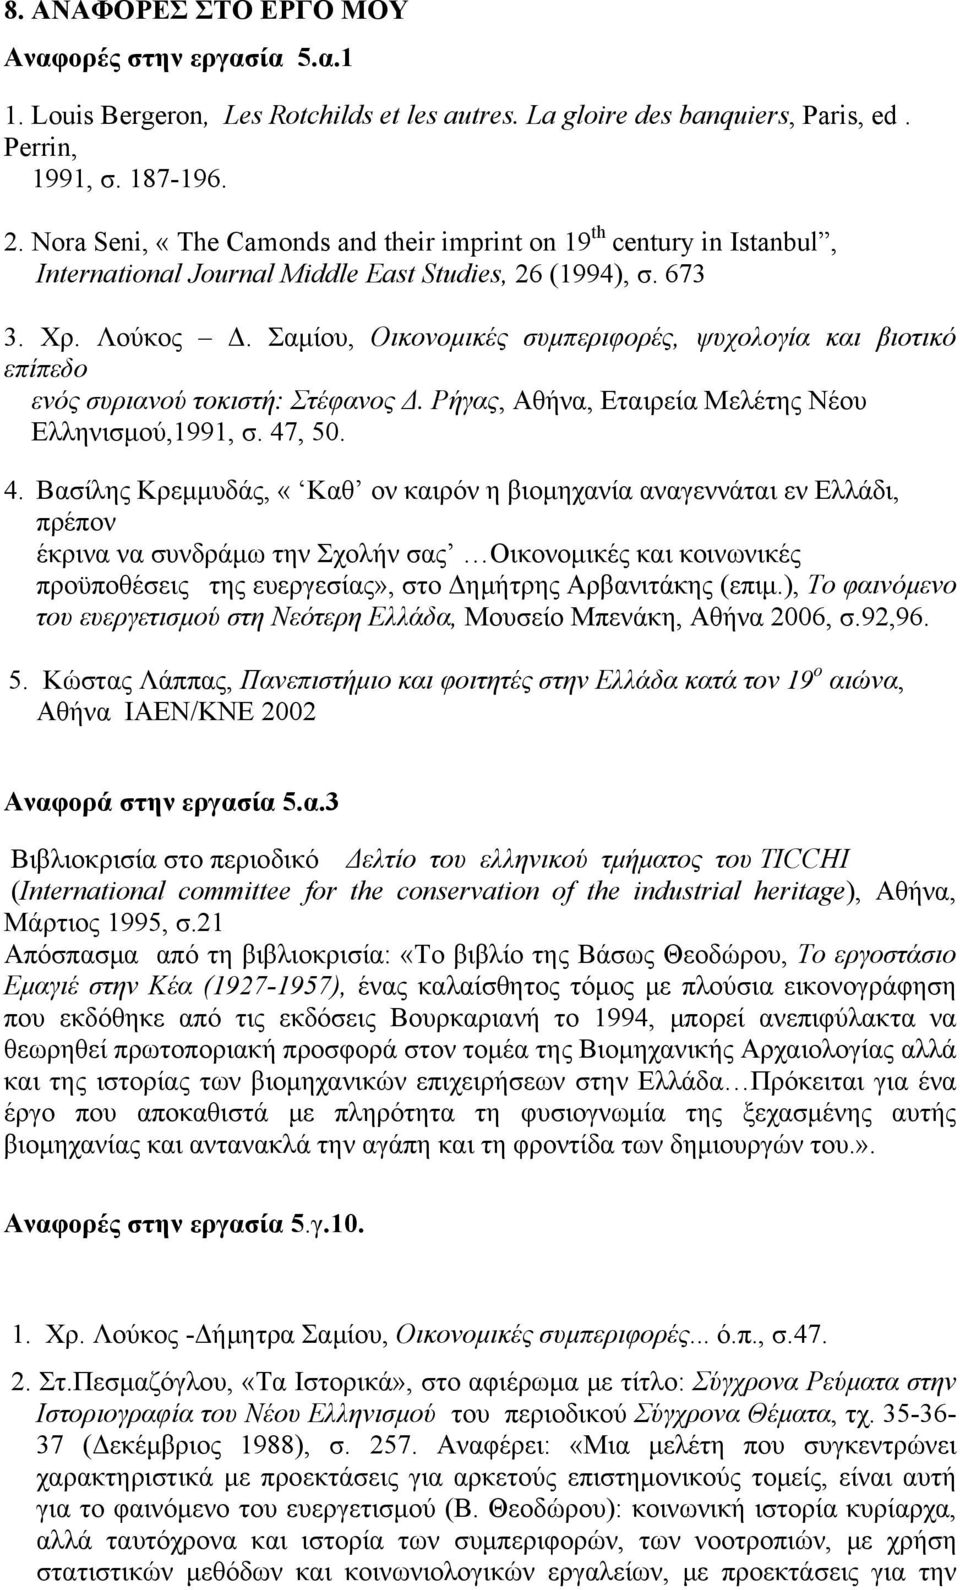 Σαμίου, Οικονομικές συμπεριφορές, ψυχολογία και βιοτικό επίπεδο ενός συριανού τοκιστή: Στέφανος Δ. Ρήγας, Αθήνα, Εταιρεία Μελέτης Νέου Ελληνισμού,1991, σ. 47